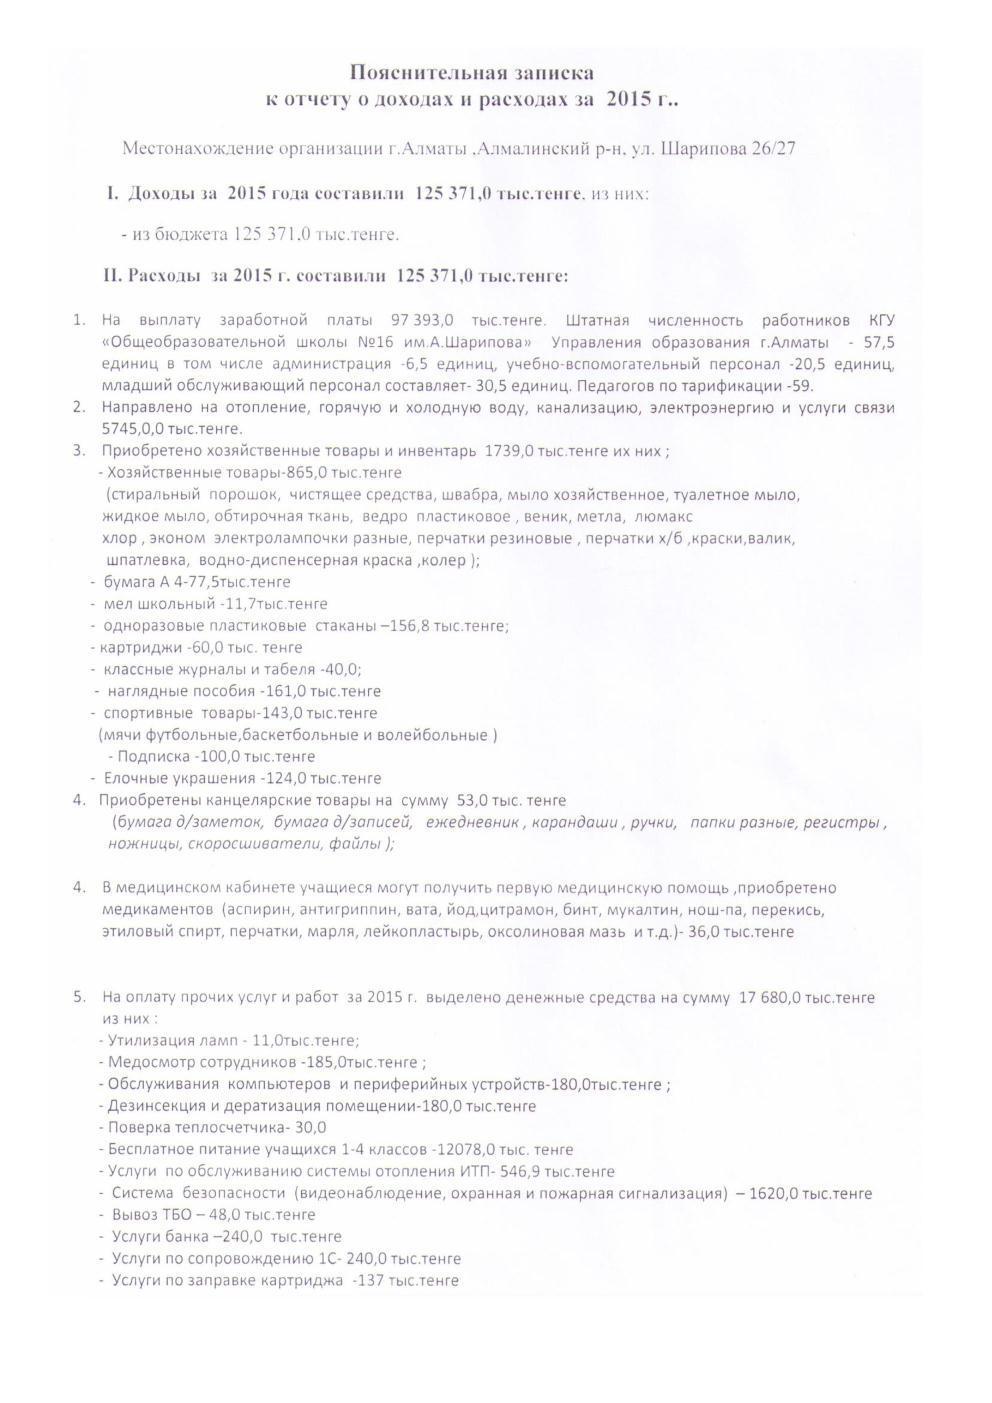 Отчет о доходах и расходах на 2015 год КГУ ОШ №16 им. А.Шарипова